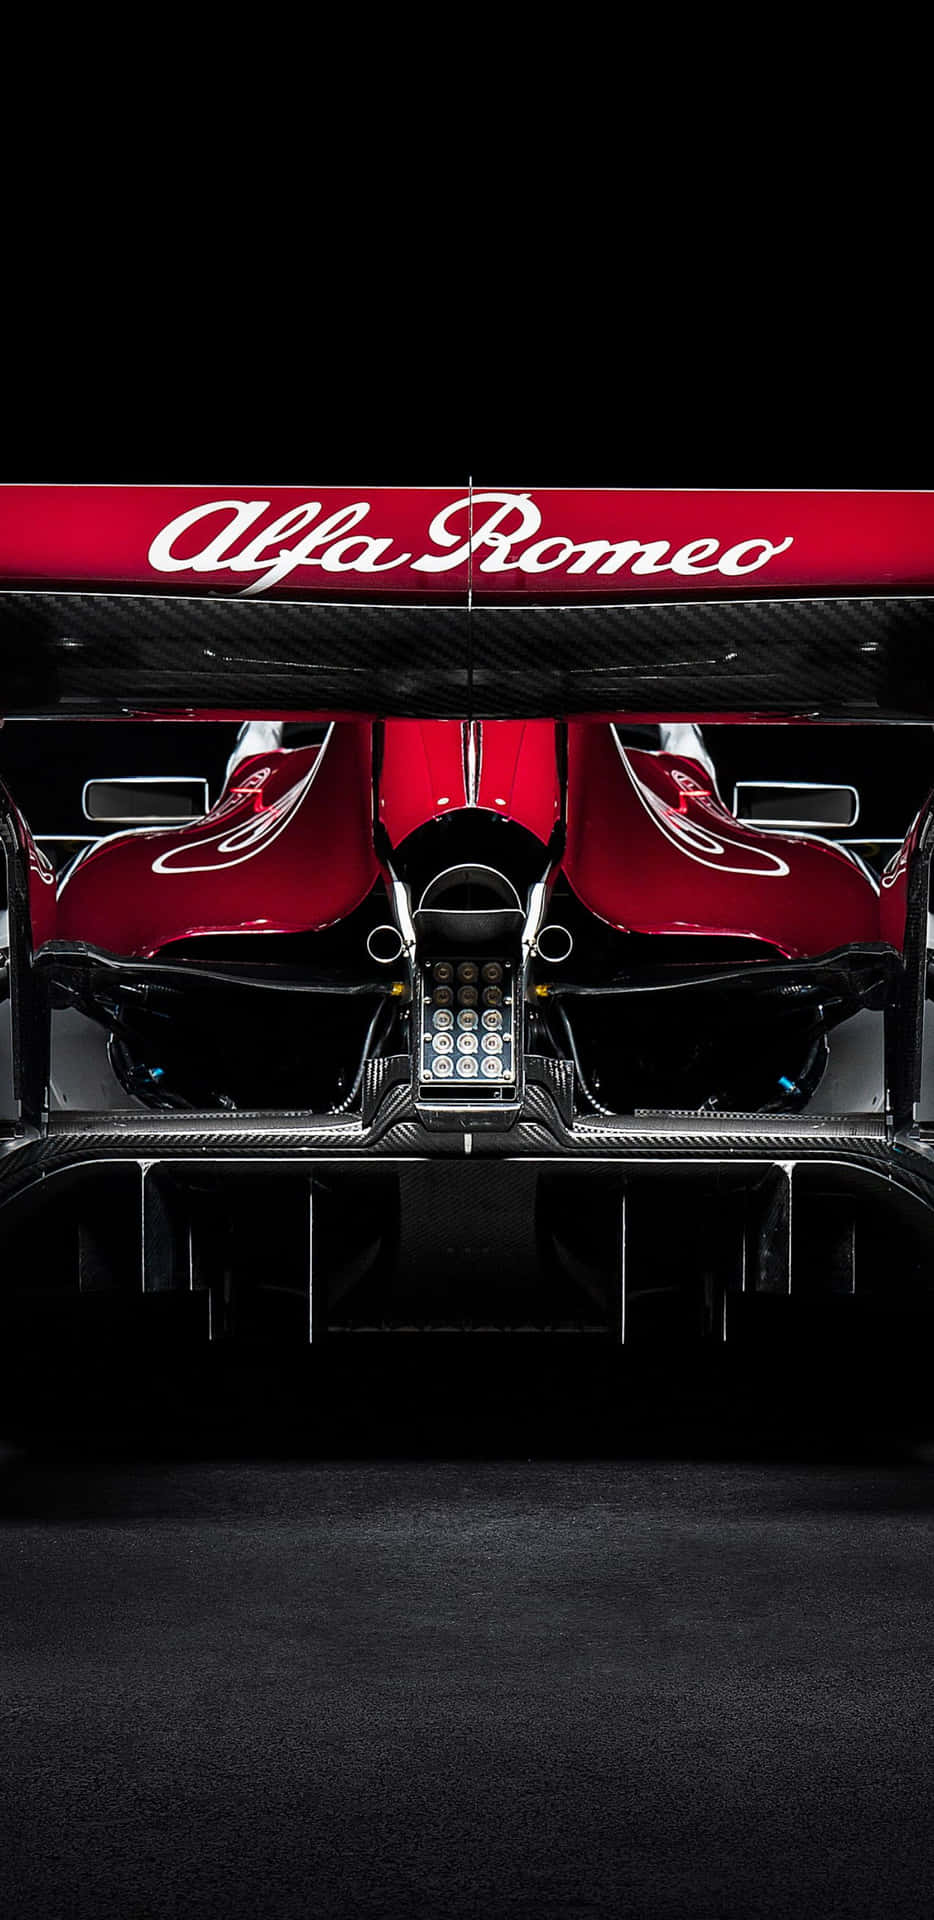 Rennwagendiffusor Pixel 3xl F1 2018 Hintergrund